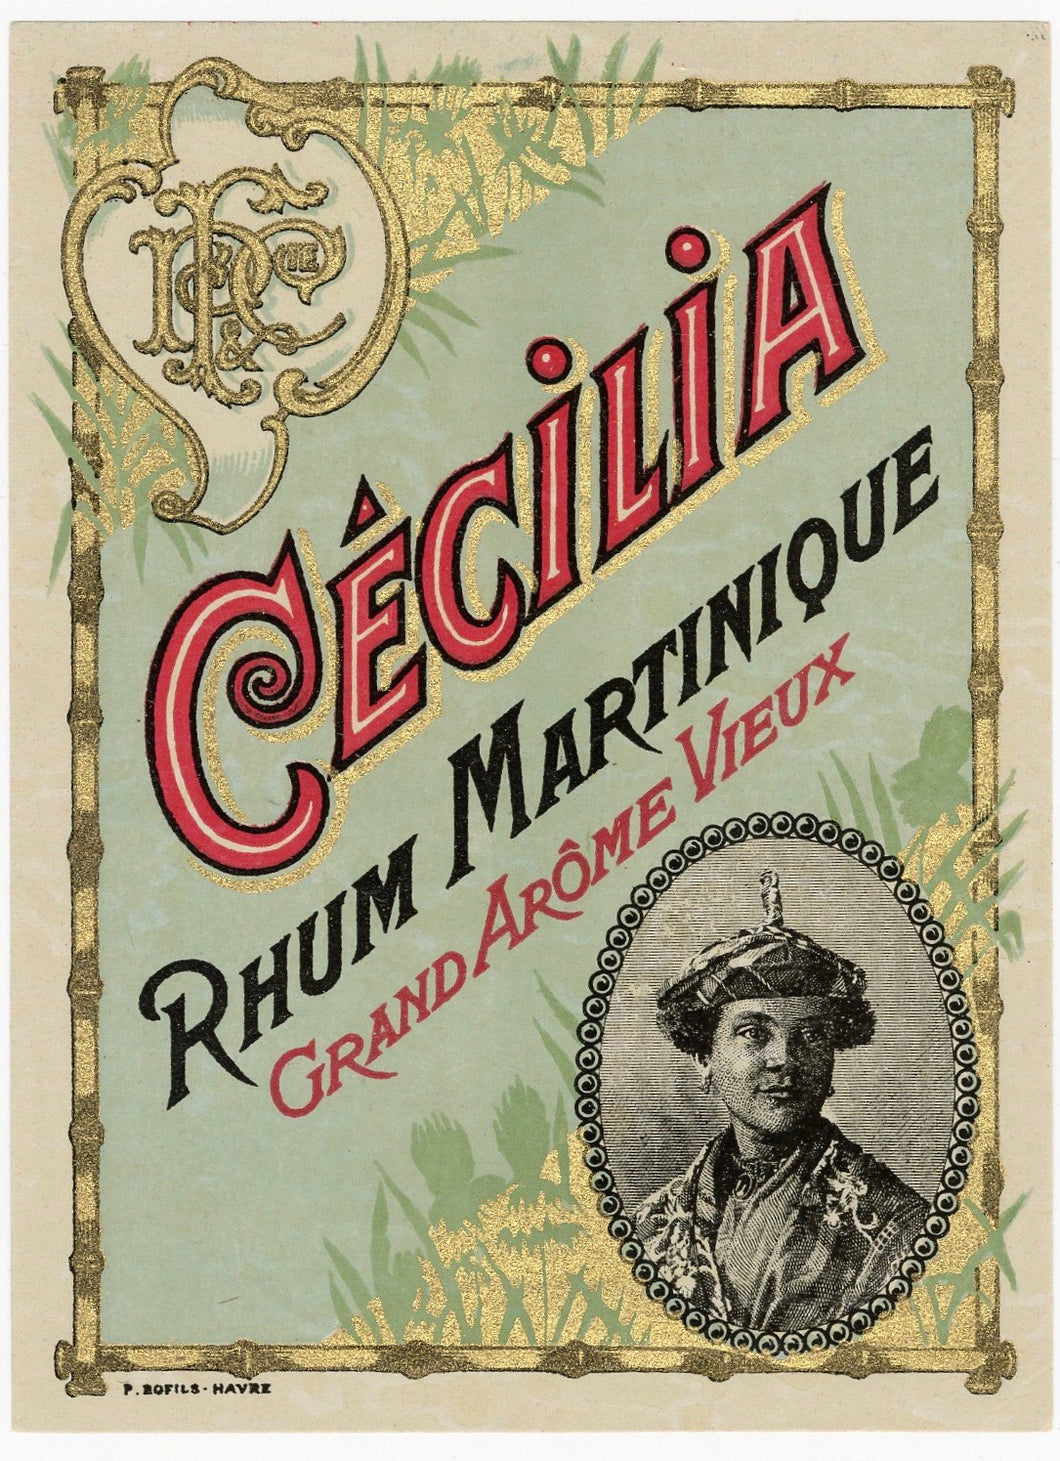 Antique, Unused, French CECILIA RHUM MARTINIQUE, Rum LABEL, Caribbean, Tiki